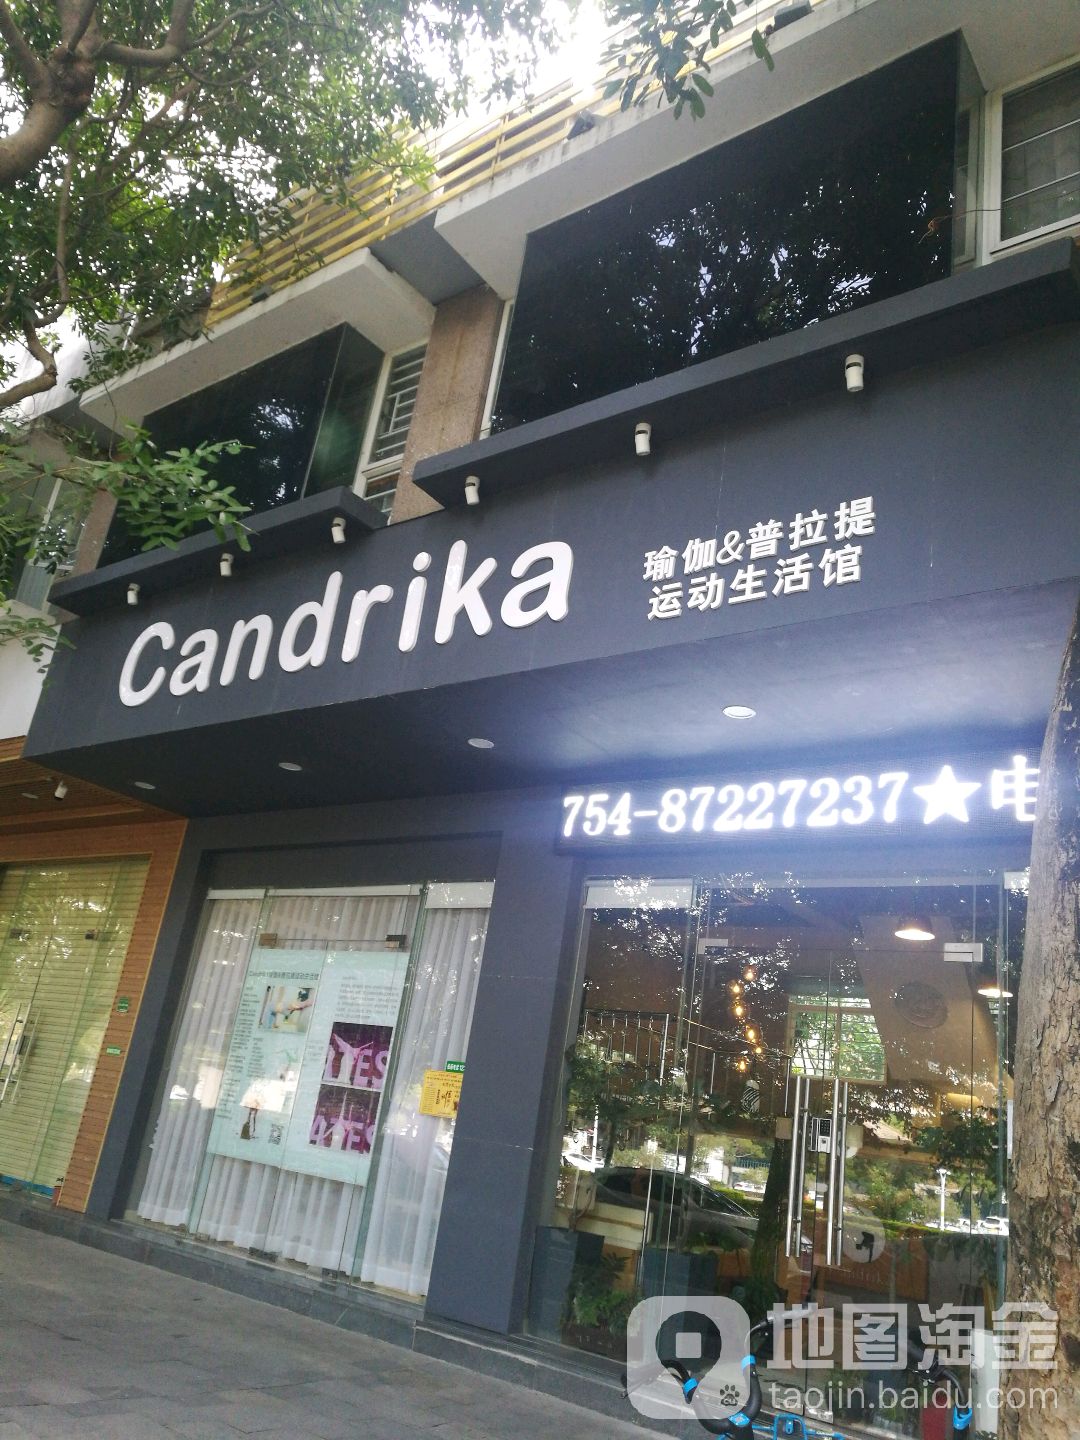 candrika瑜伽&普拉提运动生活馆